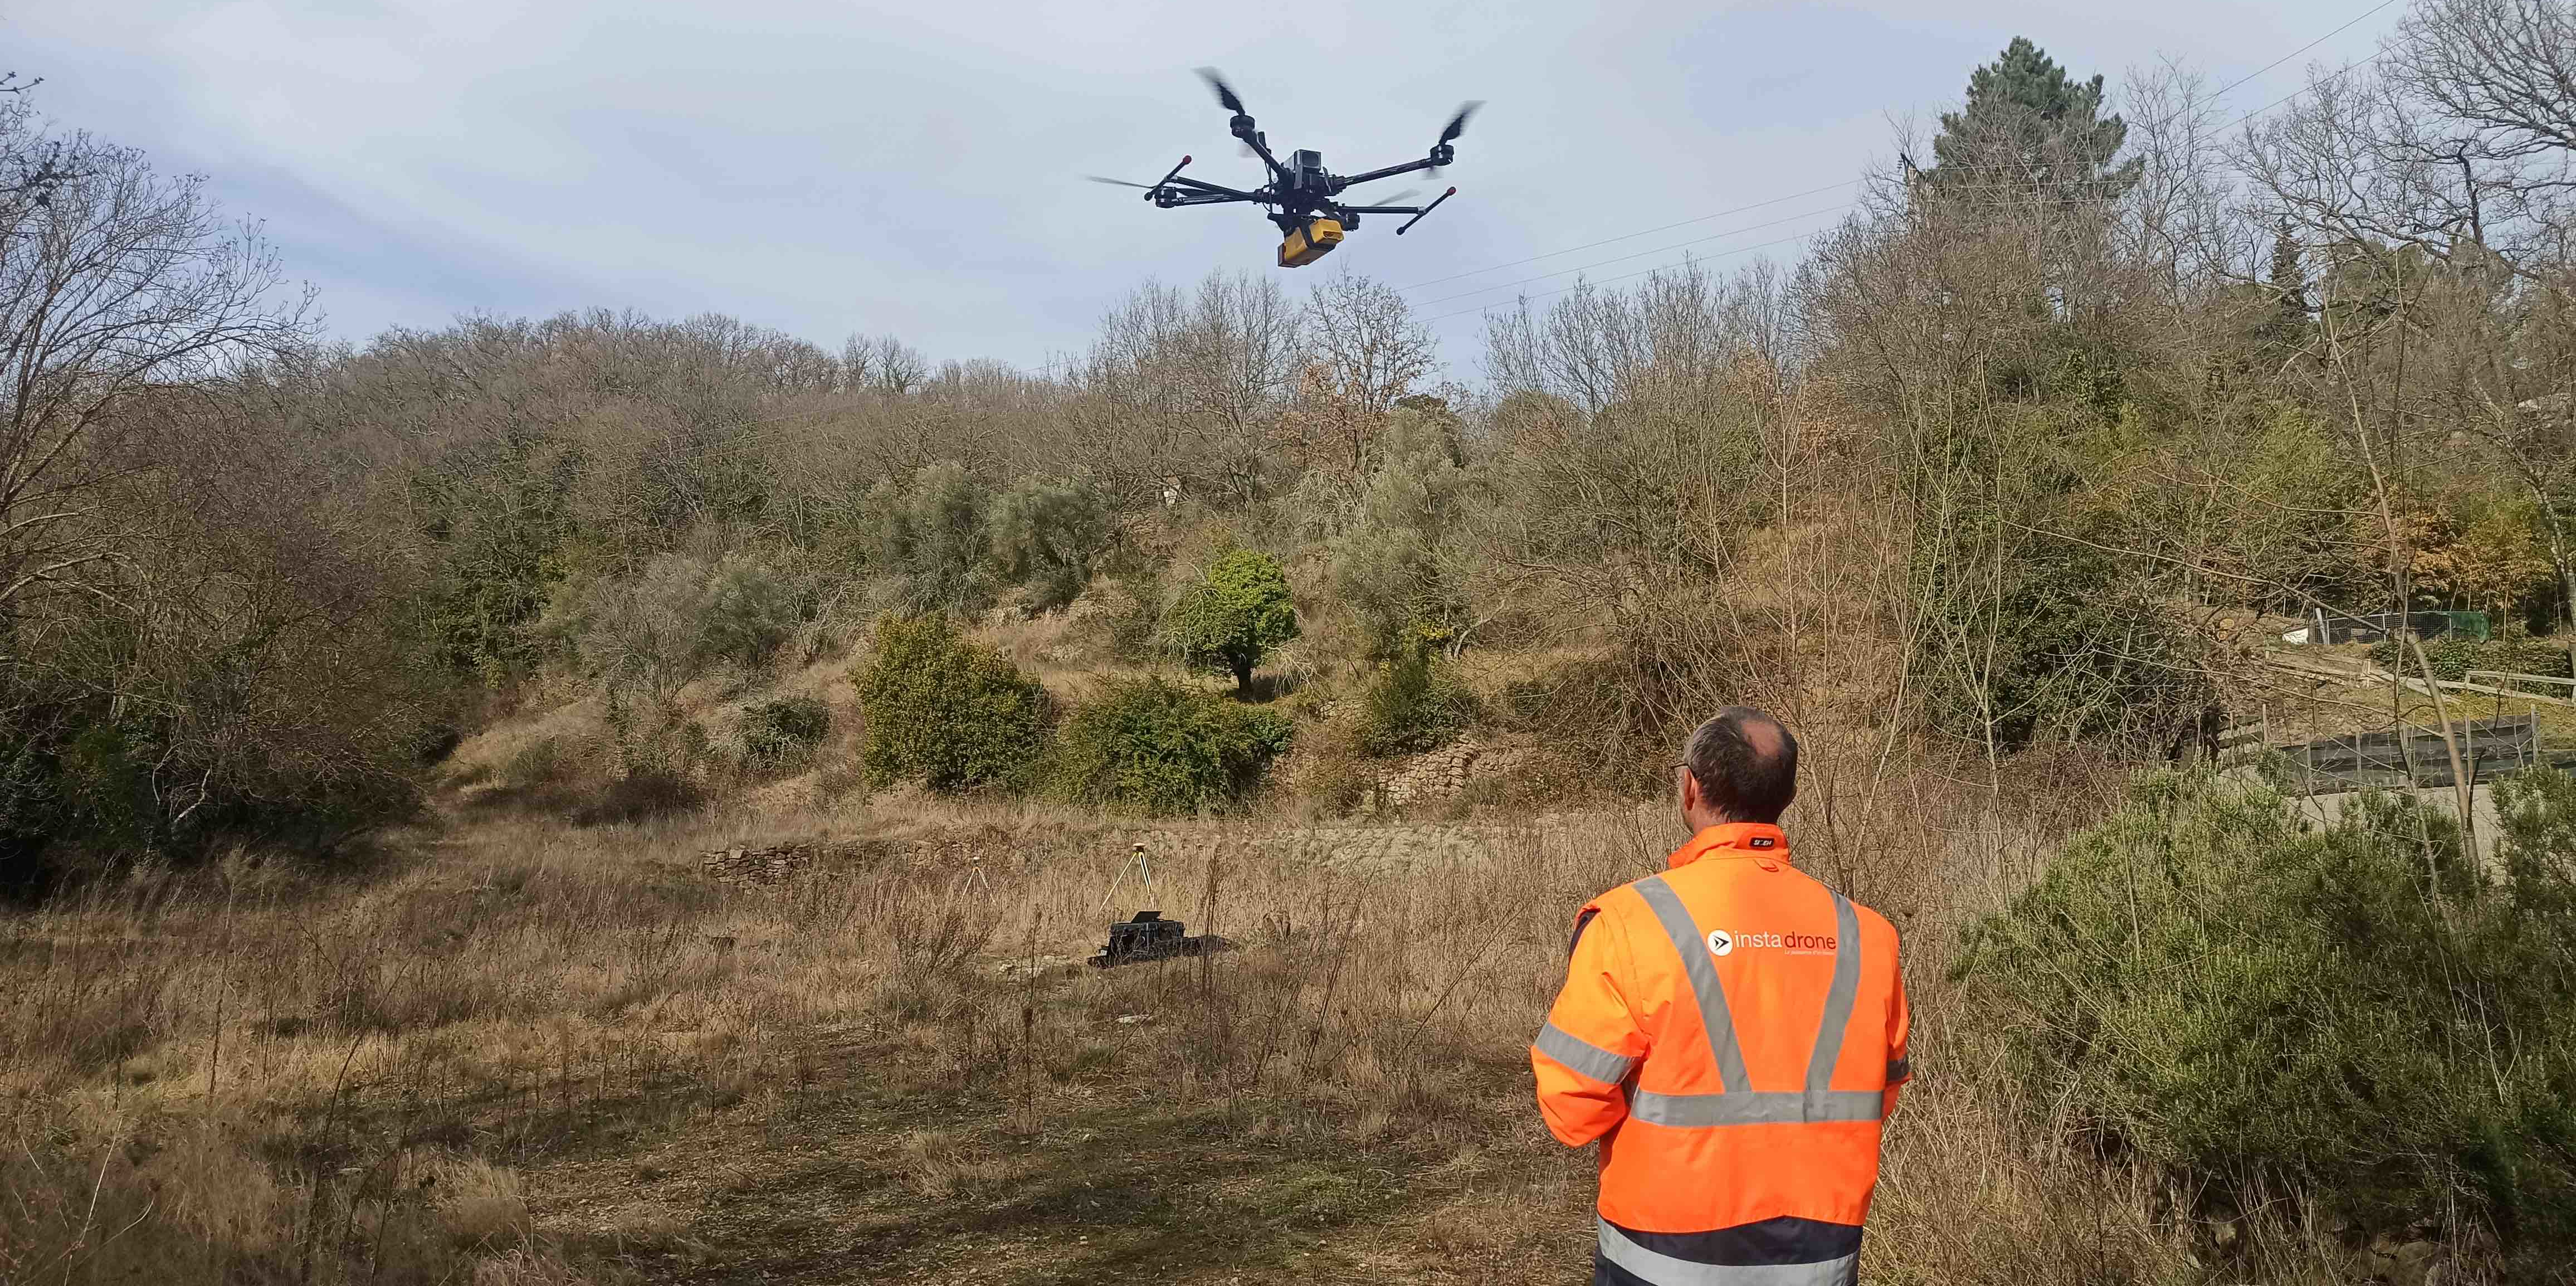 Comment Instadrone a imposé le drone dans l'industrie, l'agriculture ou les énergies